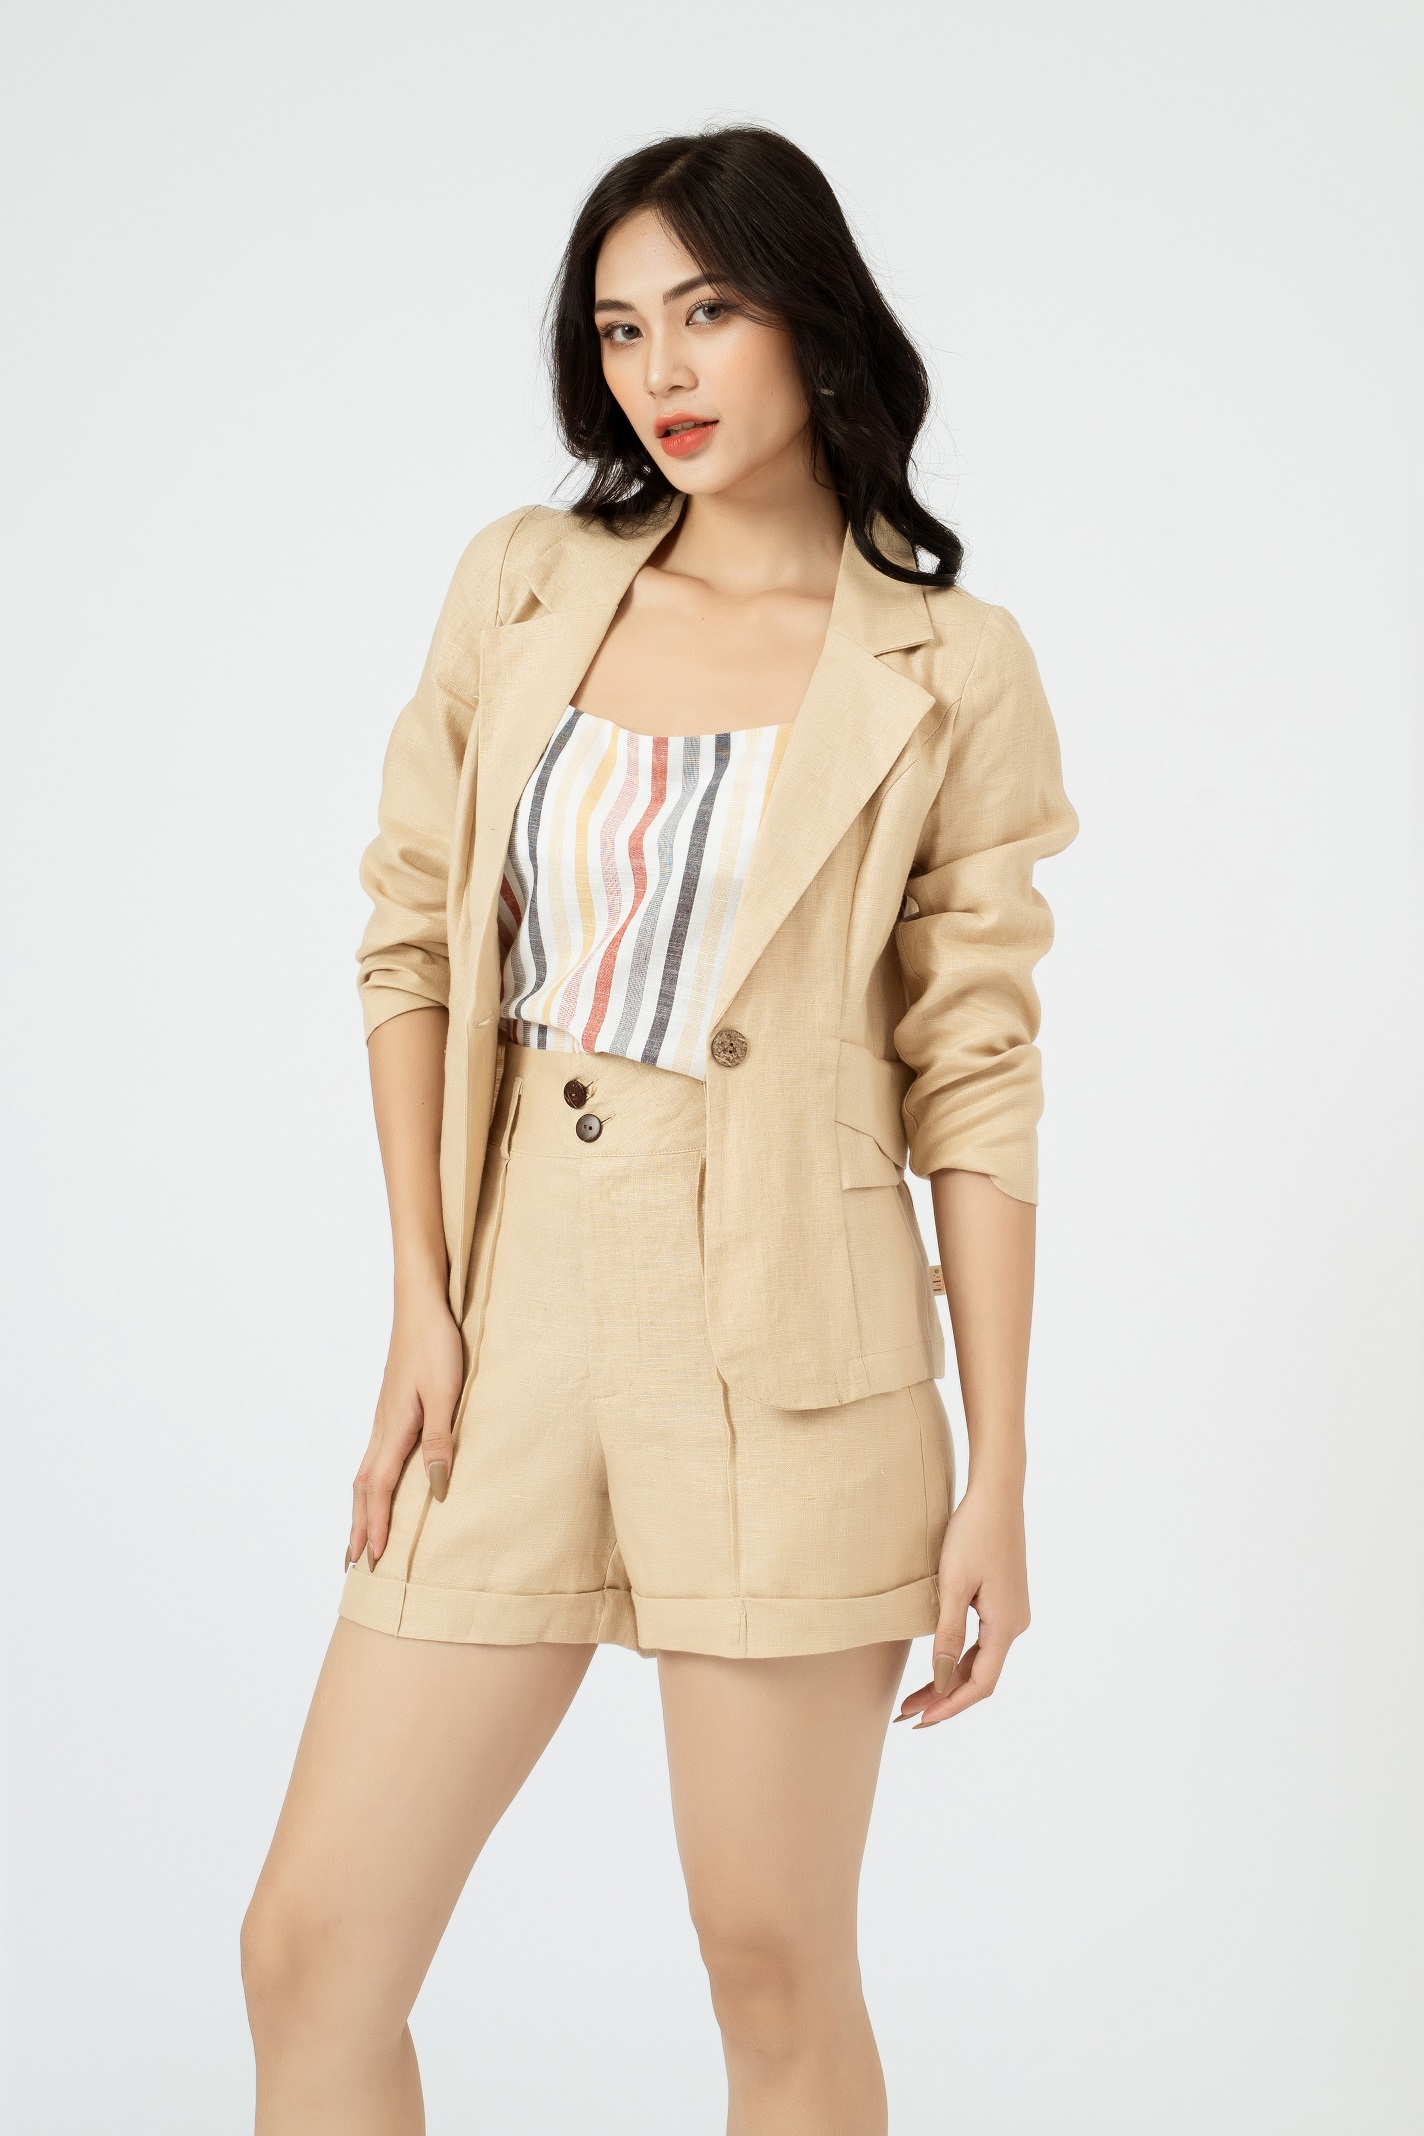 Áo Vest Nữ Công Sở Hàn Quốc NK Fashion Dáng Ngắn Thời Thượng Chất Liệu Cao